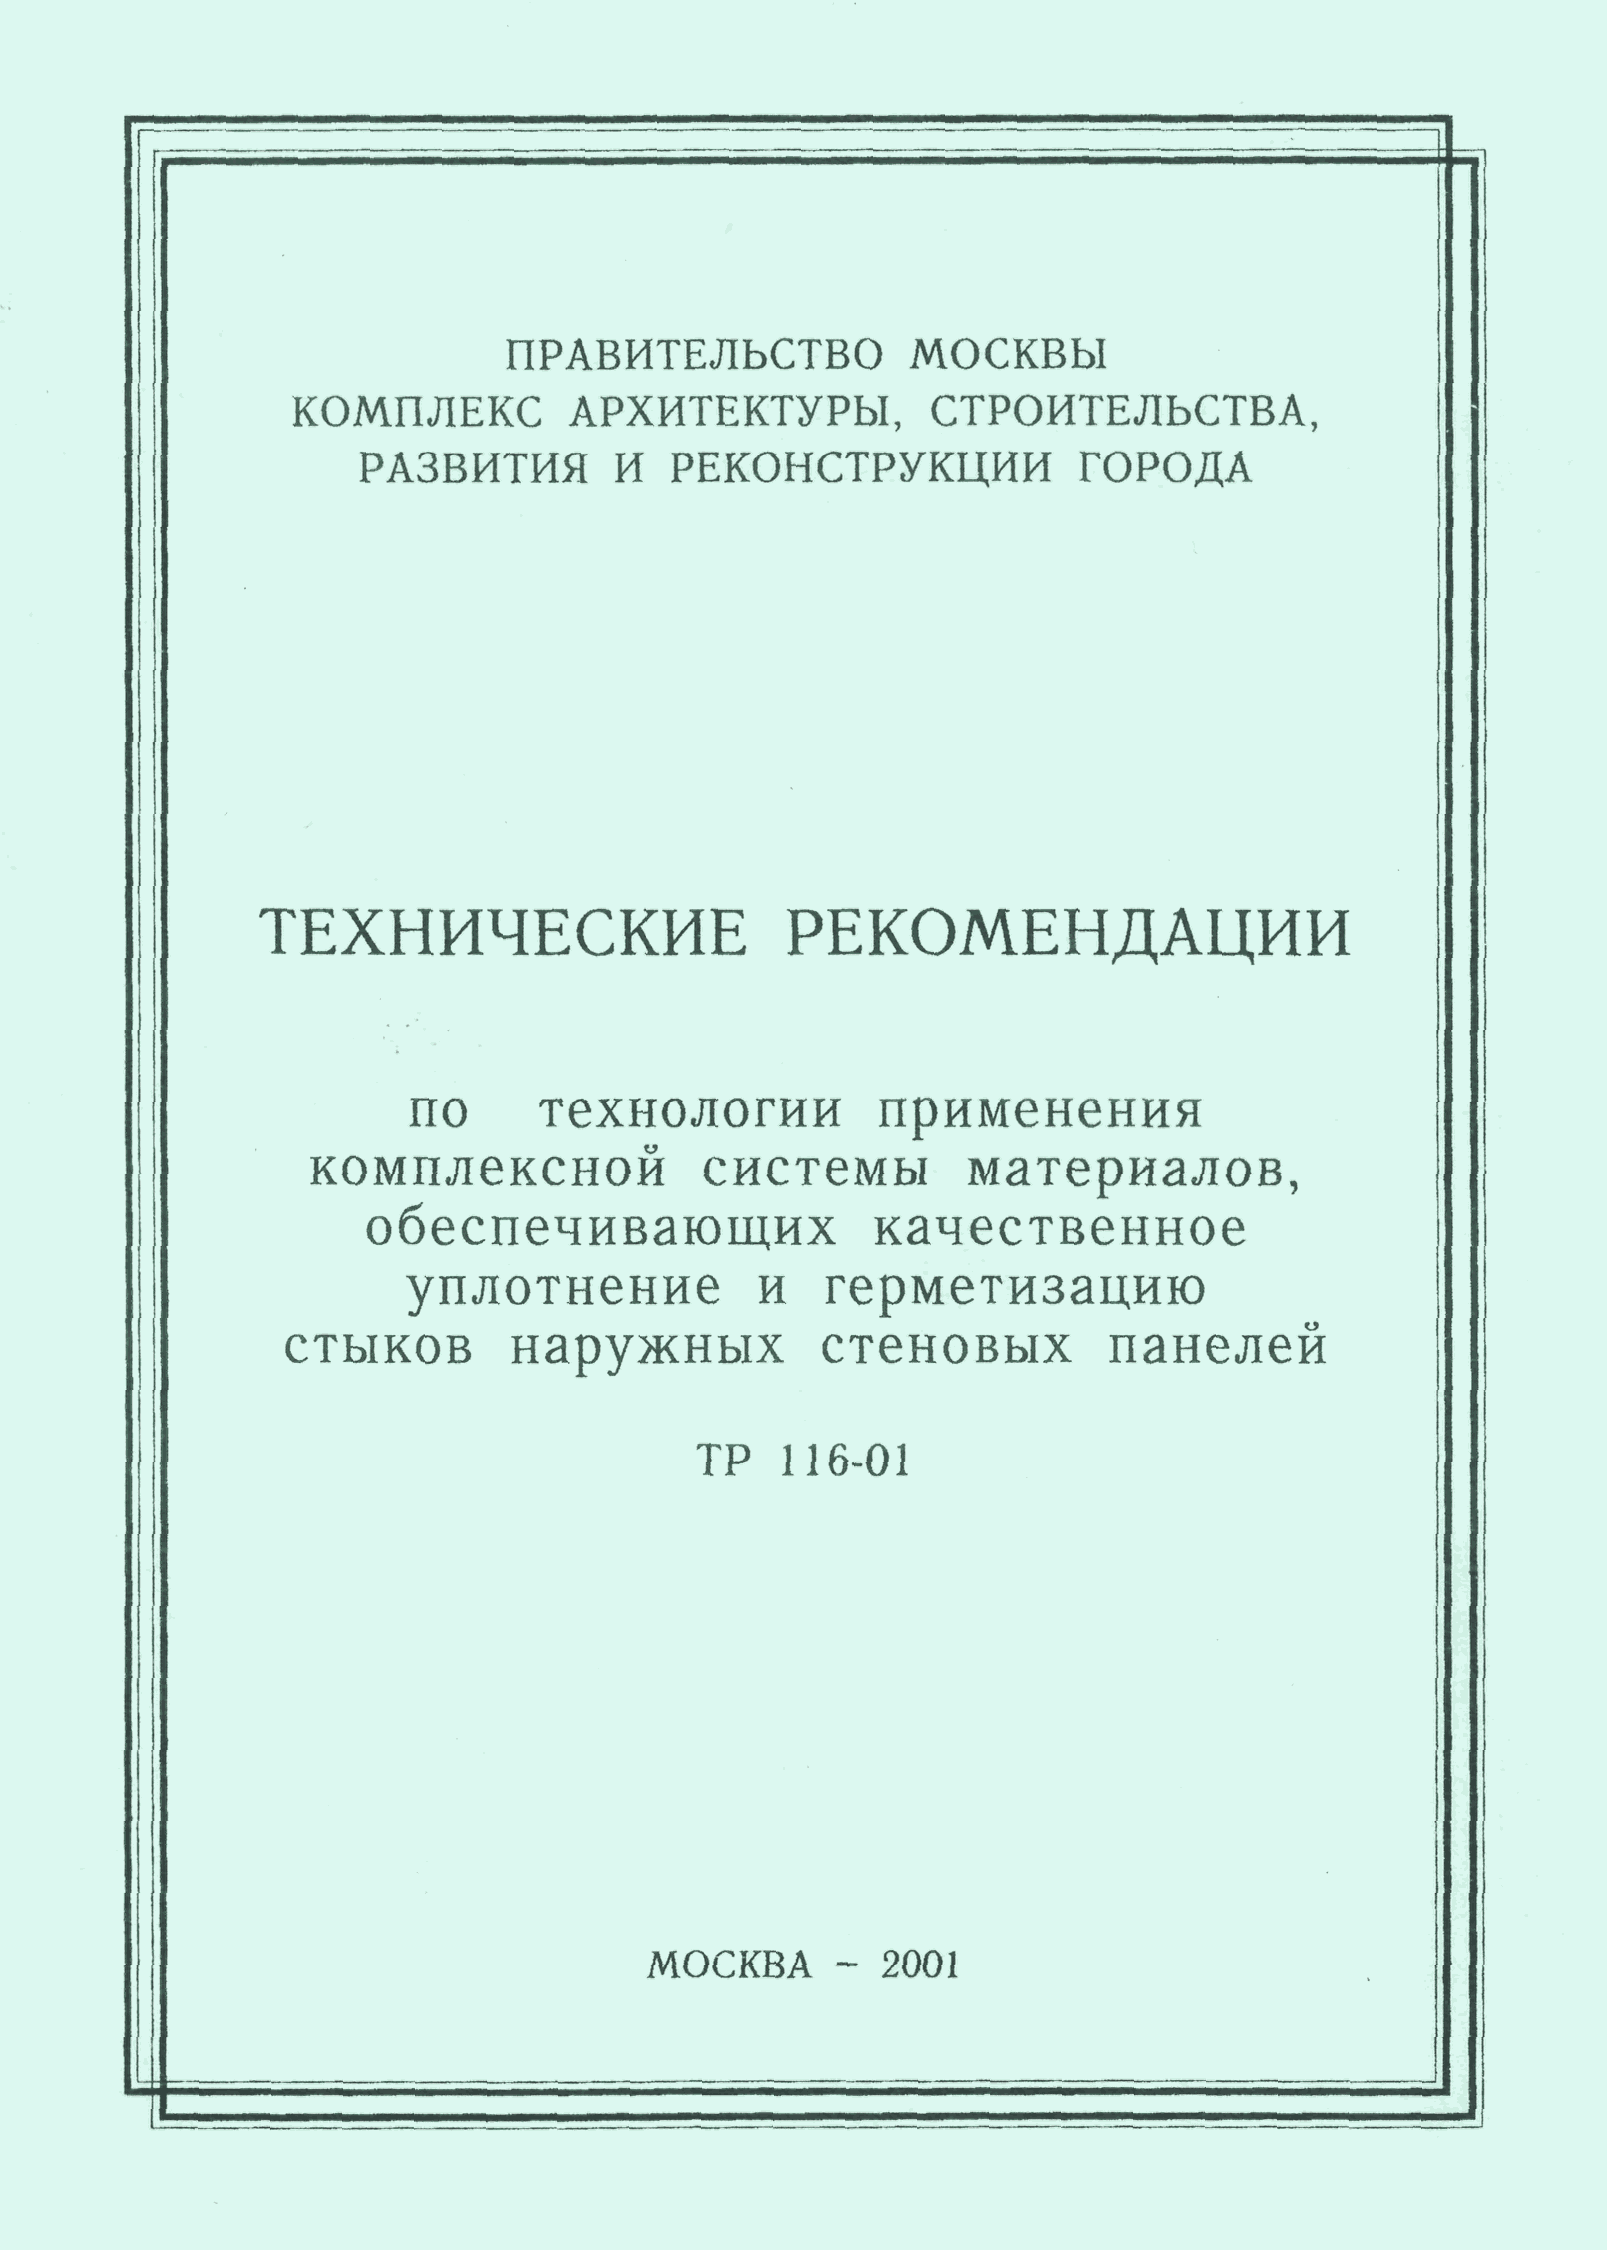 ТР 116-01